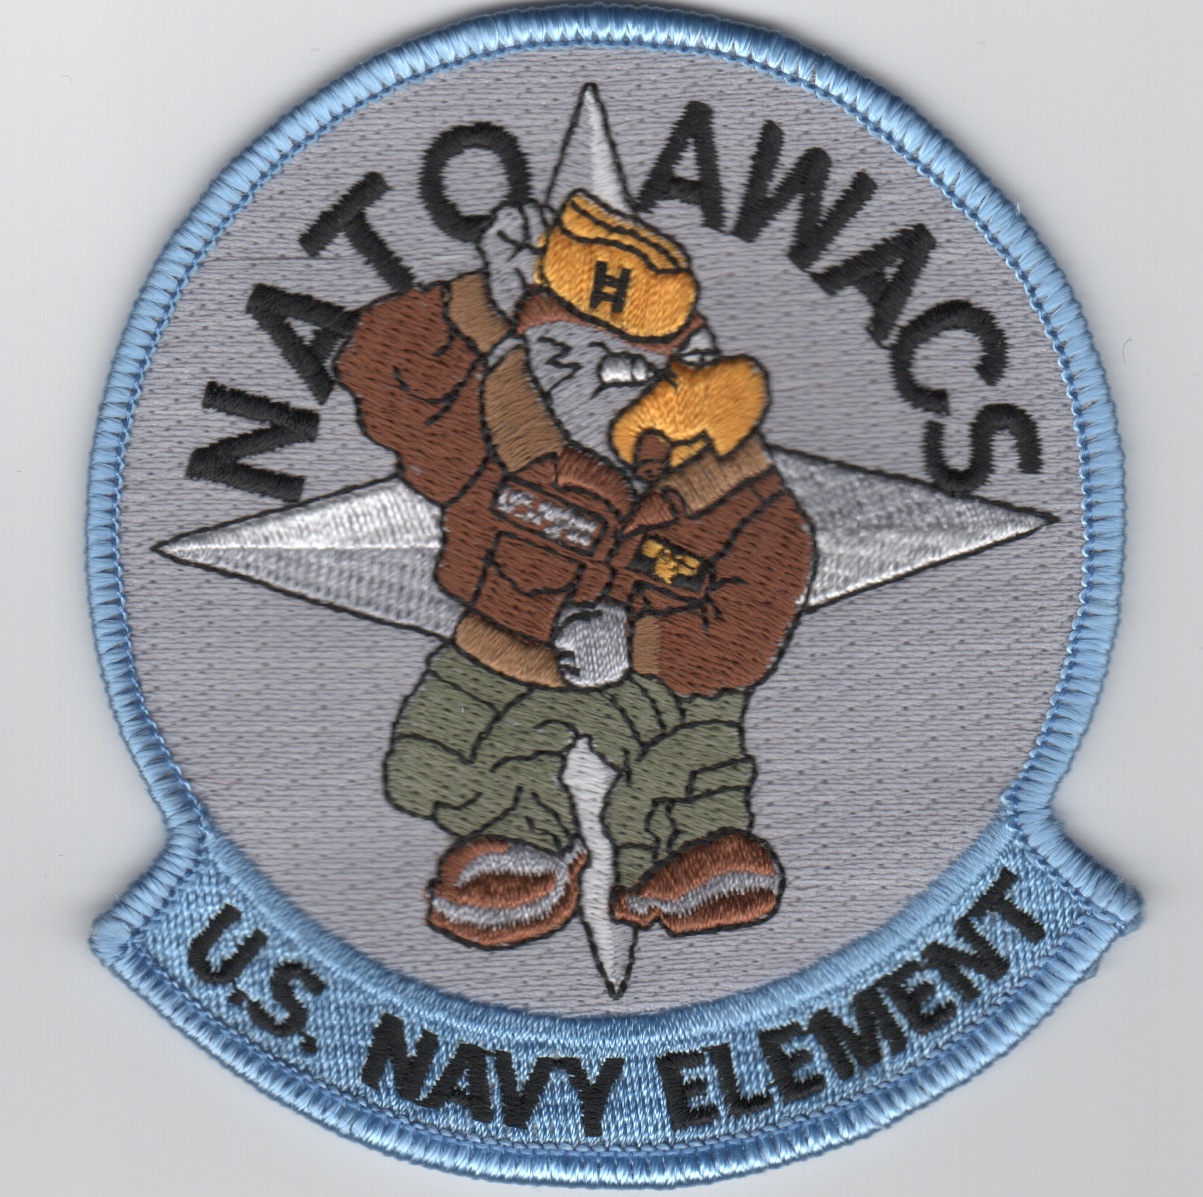 NATO AWACS - USN Element